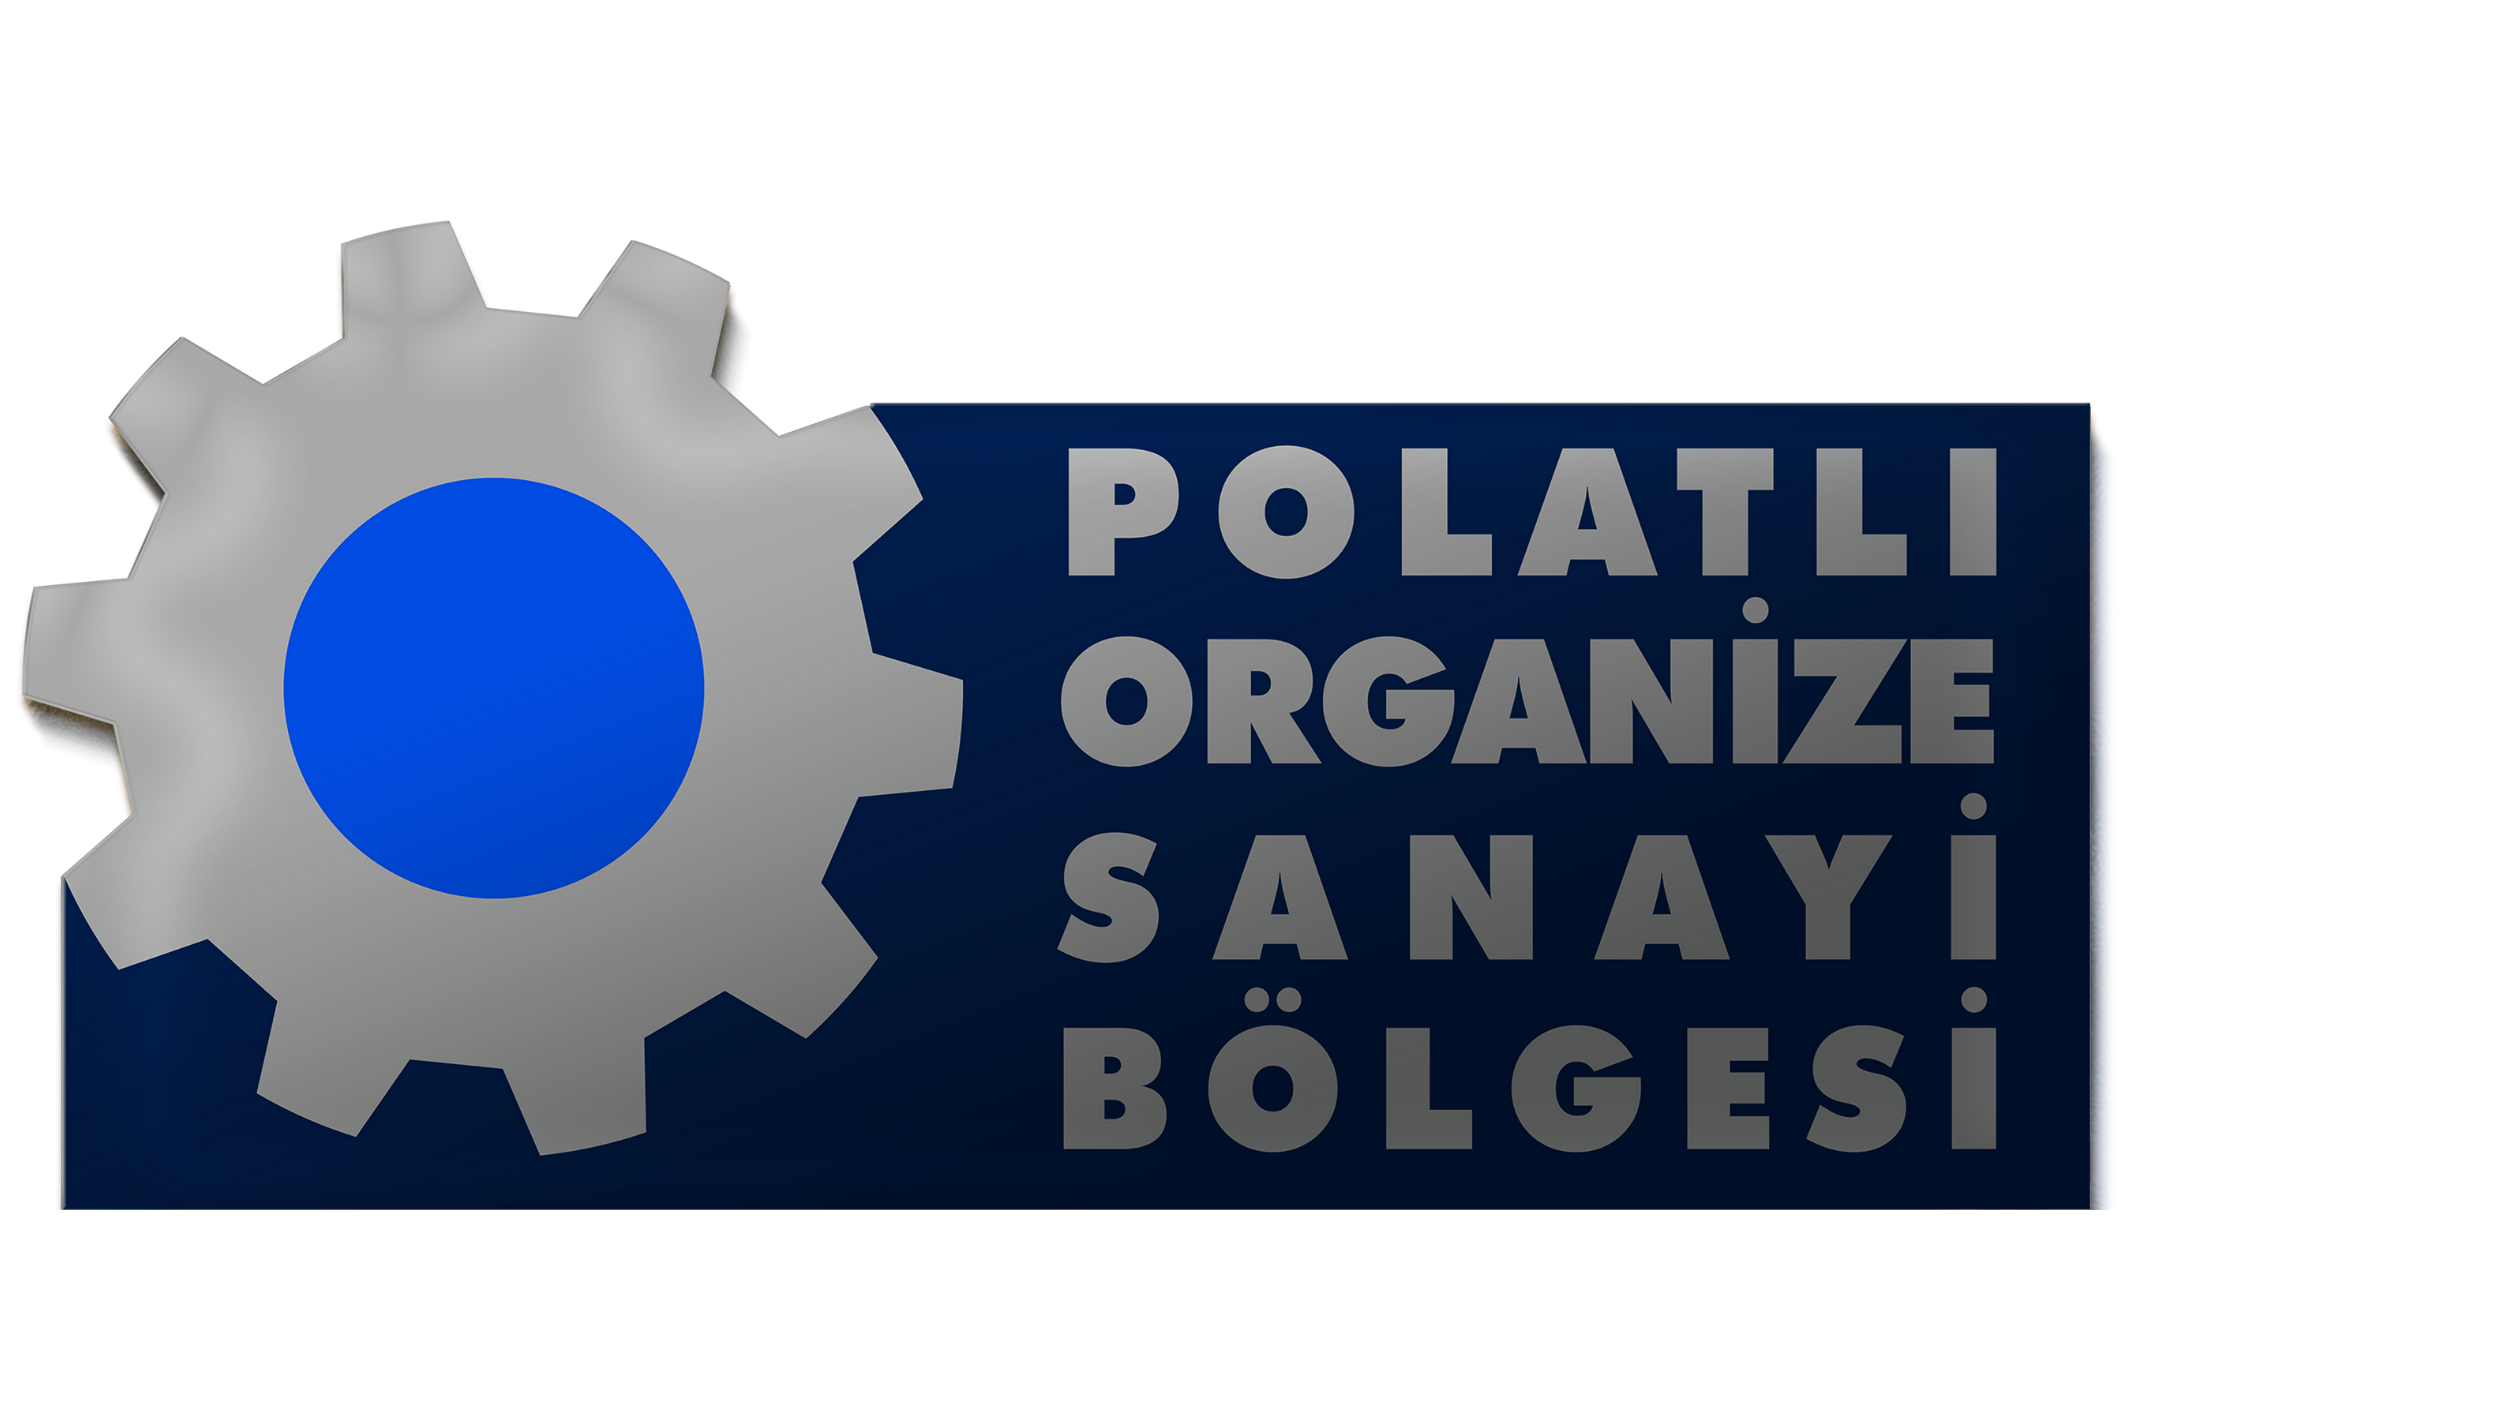 Polatlı Organize Sanayi Bölgesi